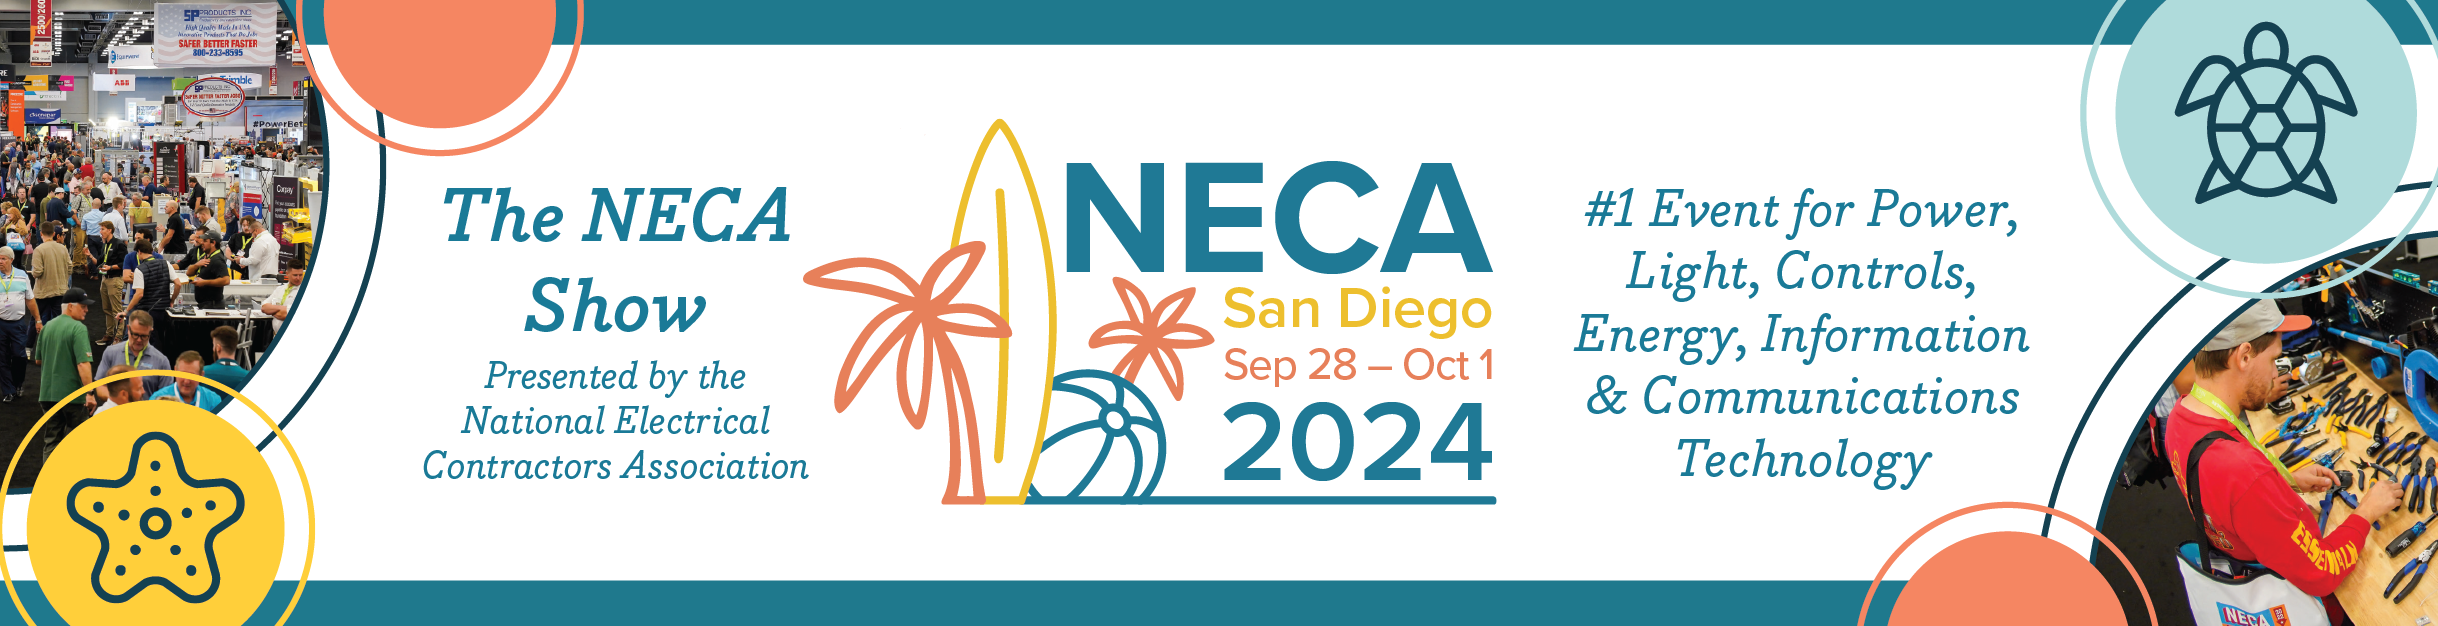 NECA 2024 Convention and Trade Show